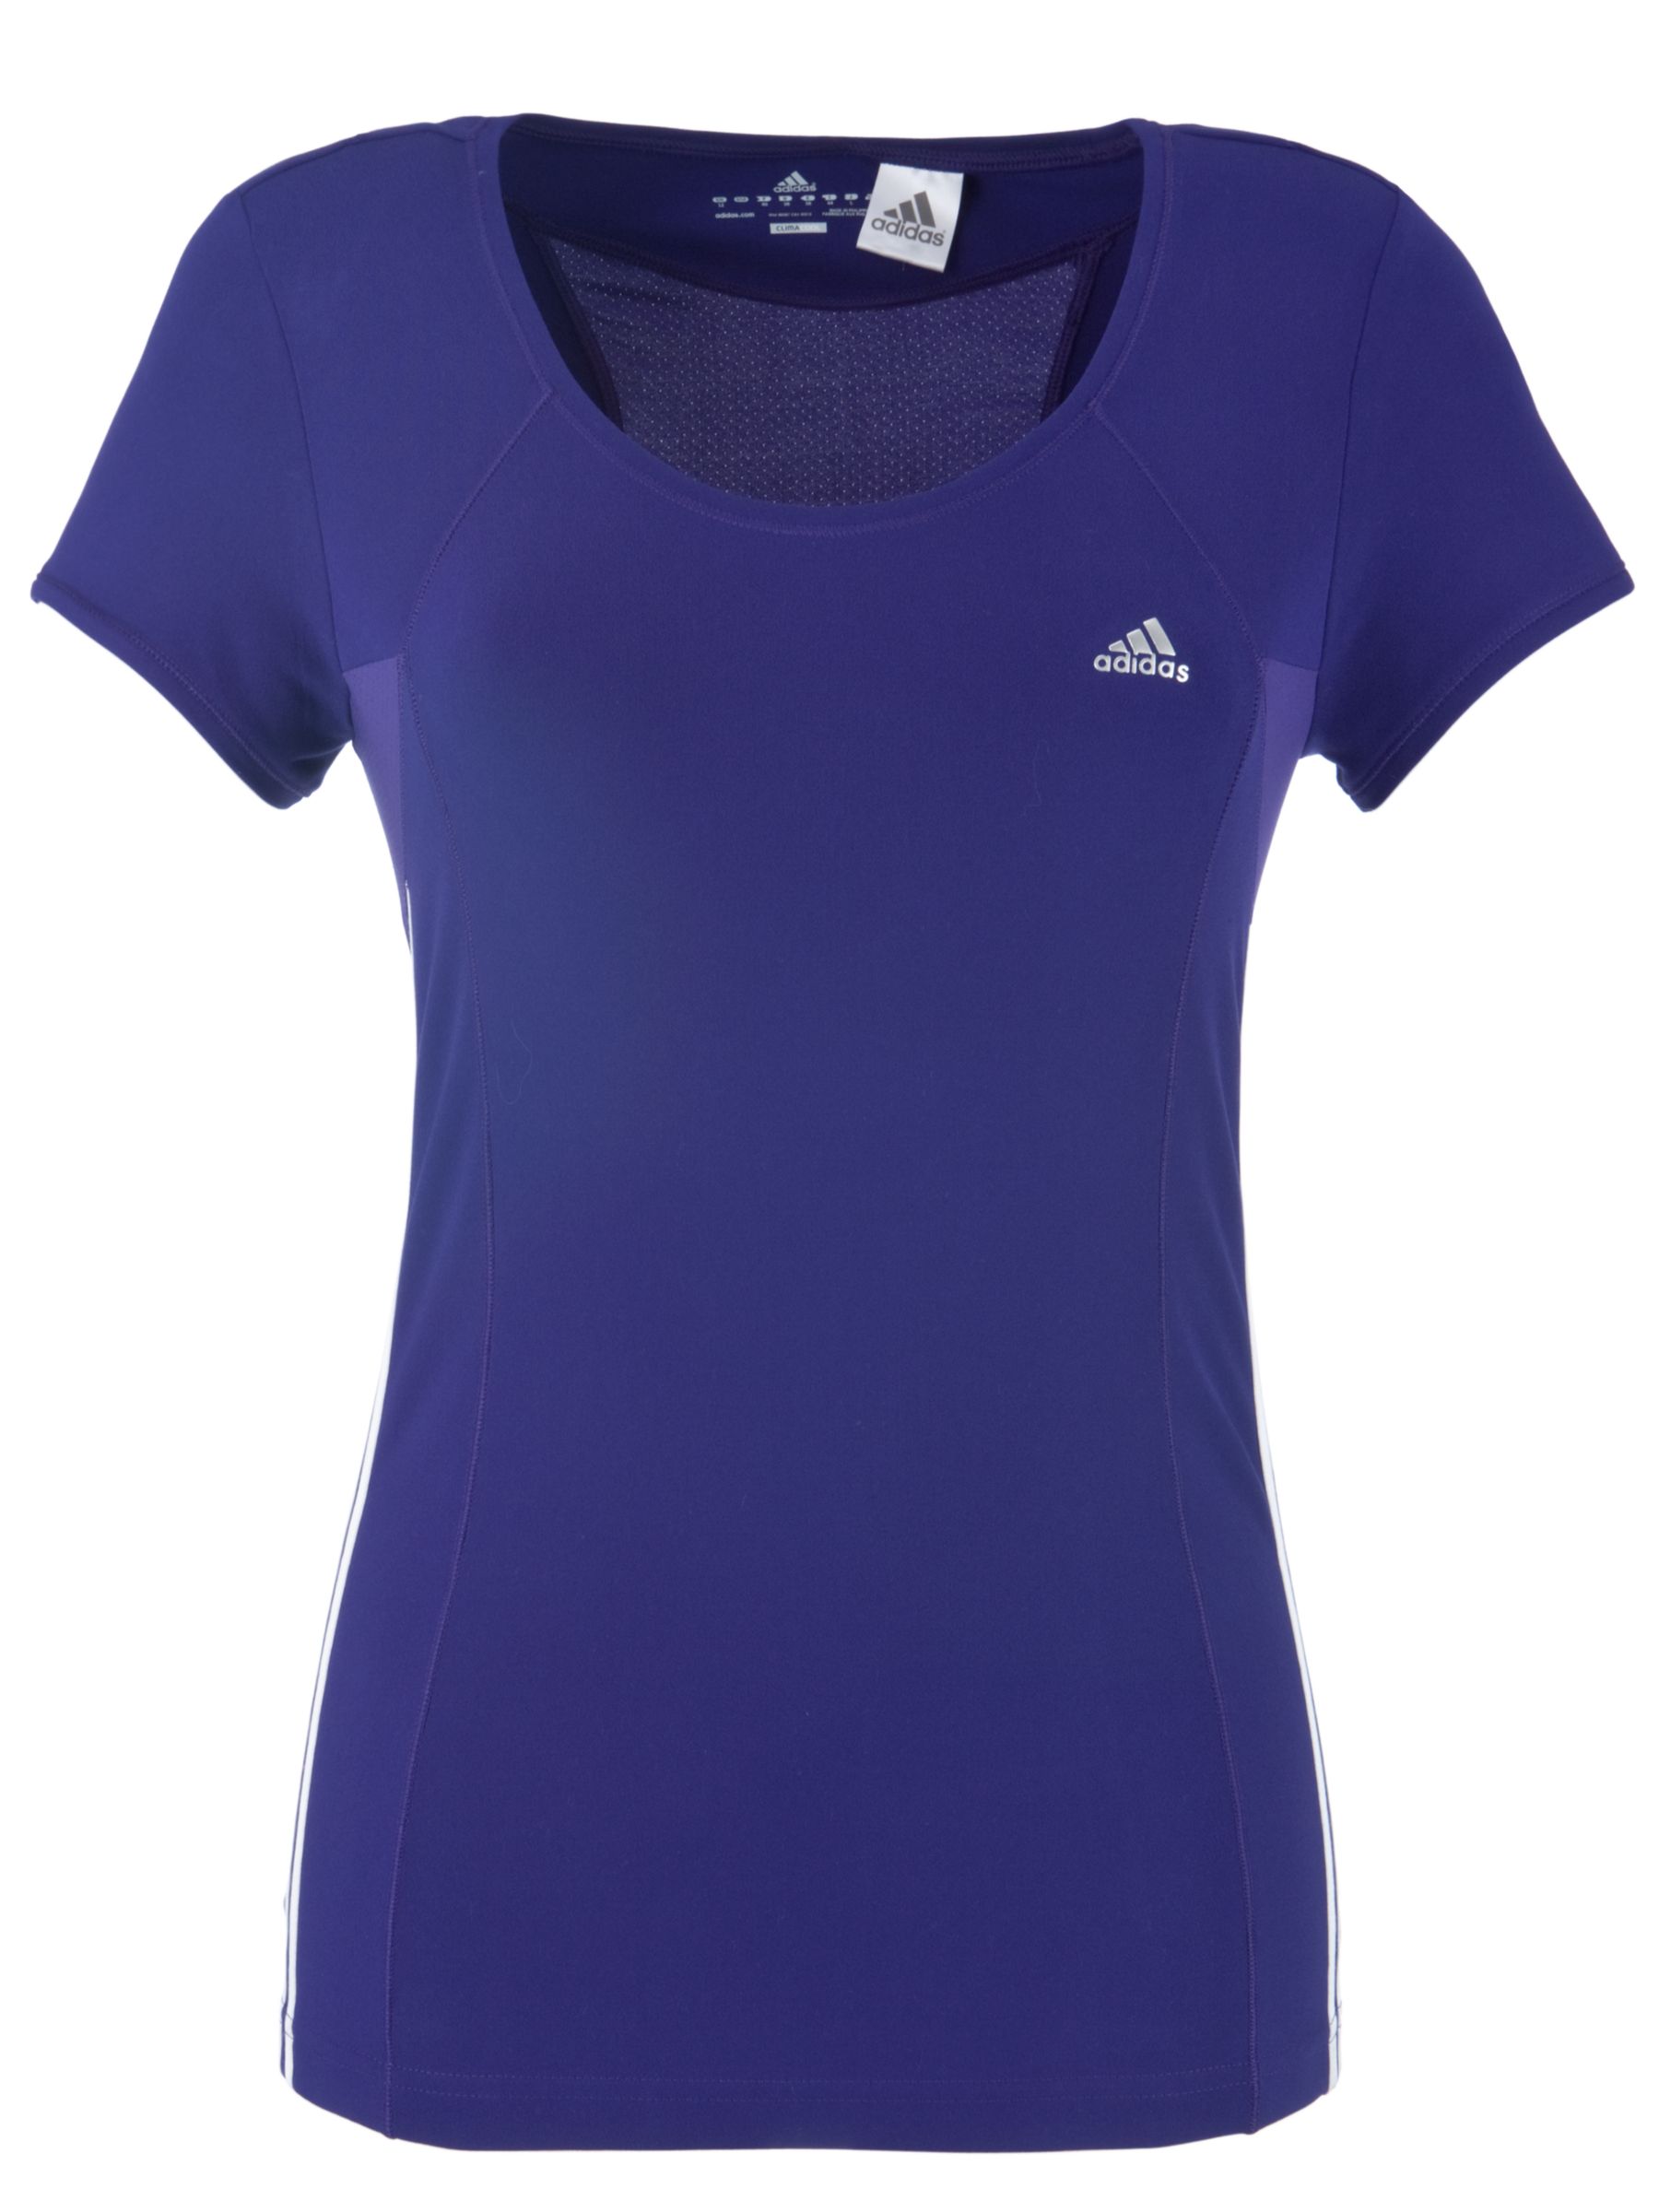 Adidas Clima Core T-shirt, Purple